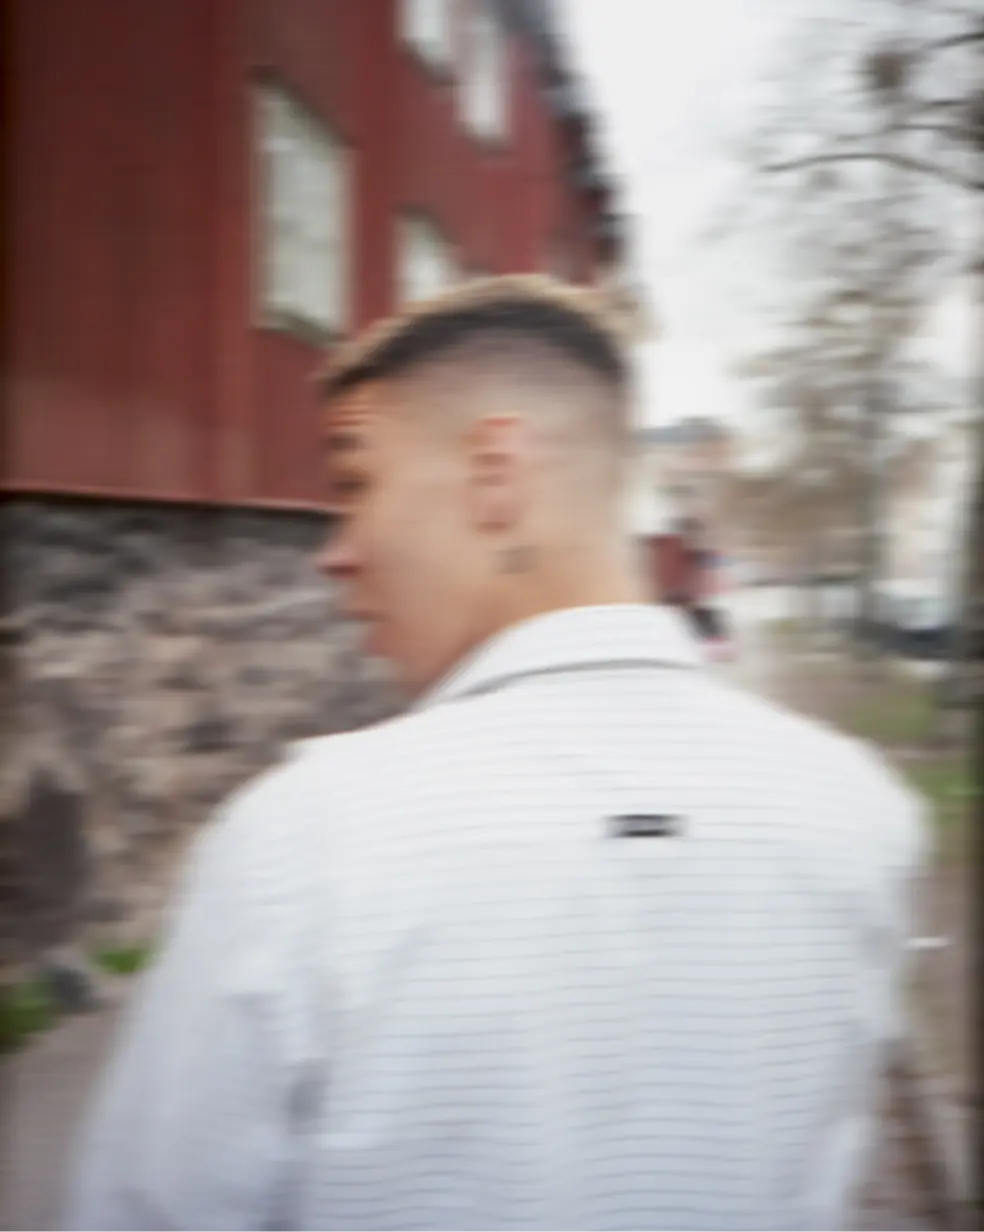 Un'immagine sfocata di una persona che cammina dando le spalle alla telecamera, vestita con abiti bianchi. La testa della persona è inclinata all'indietro.